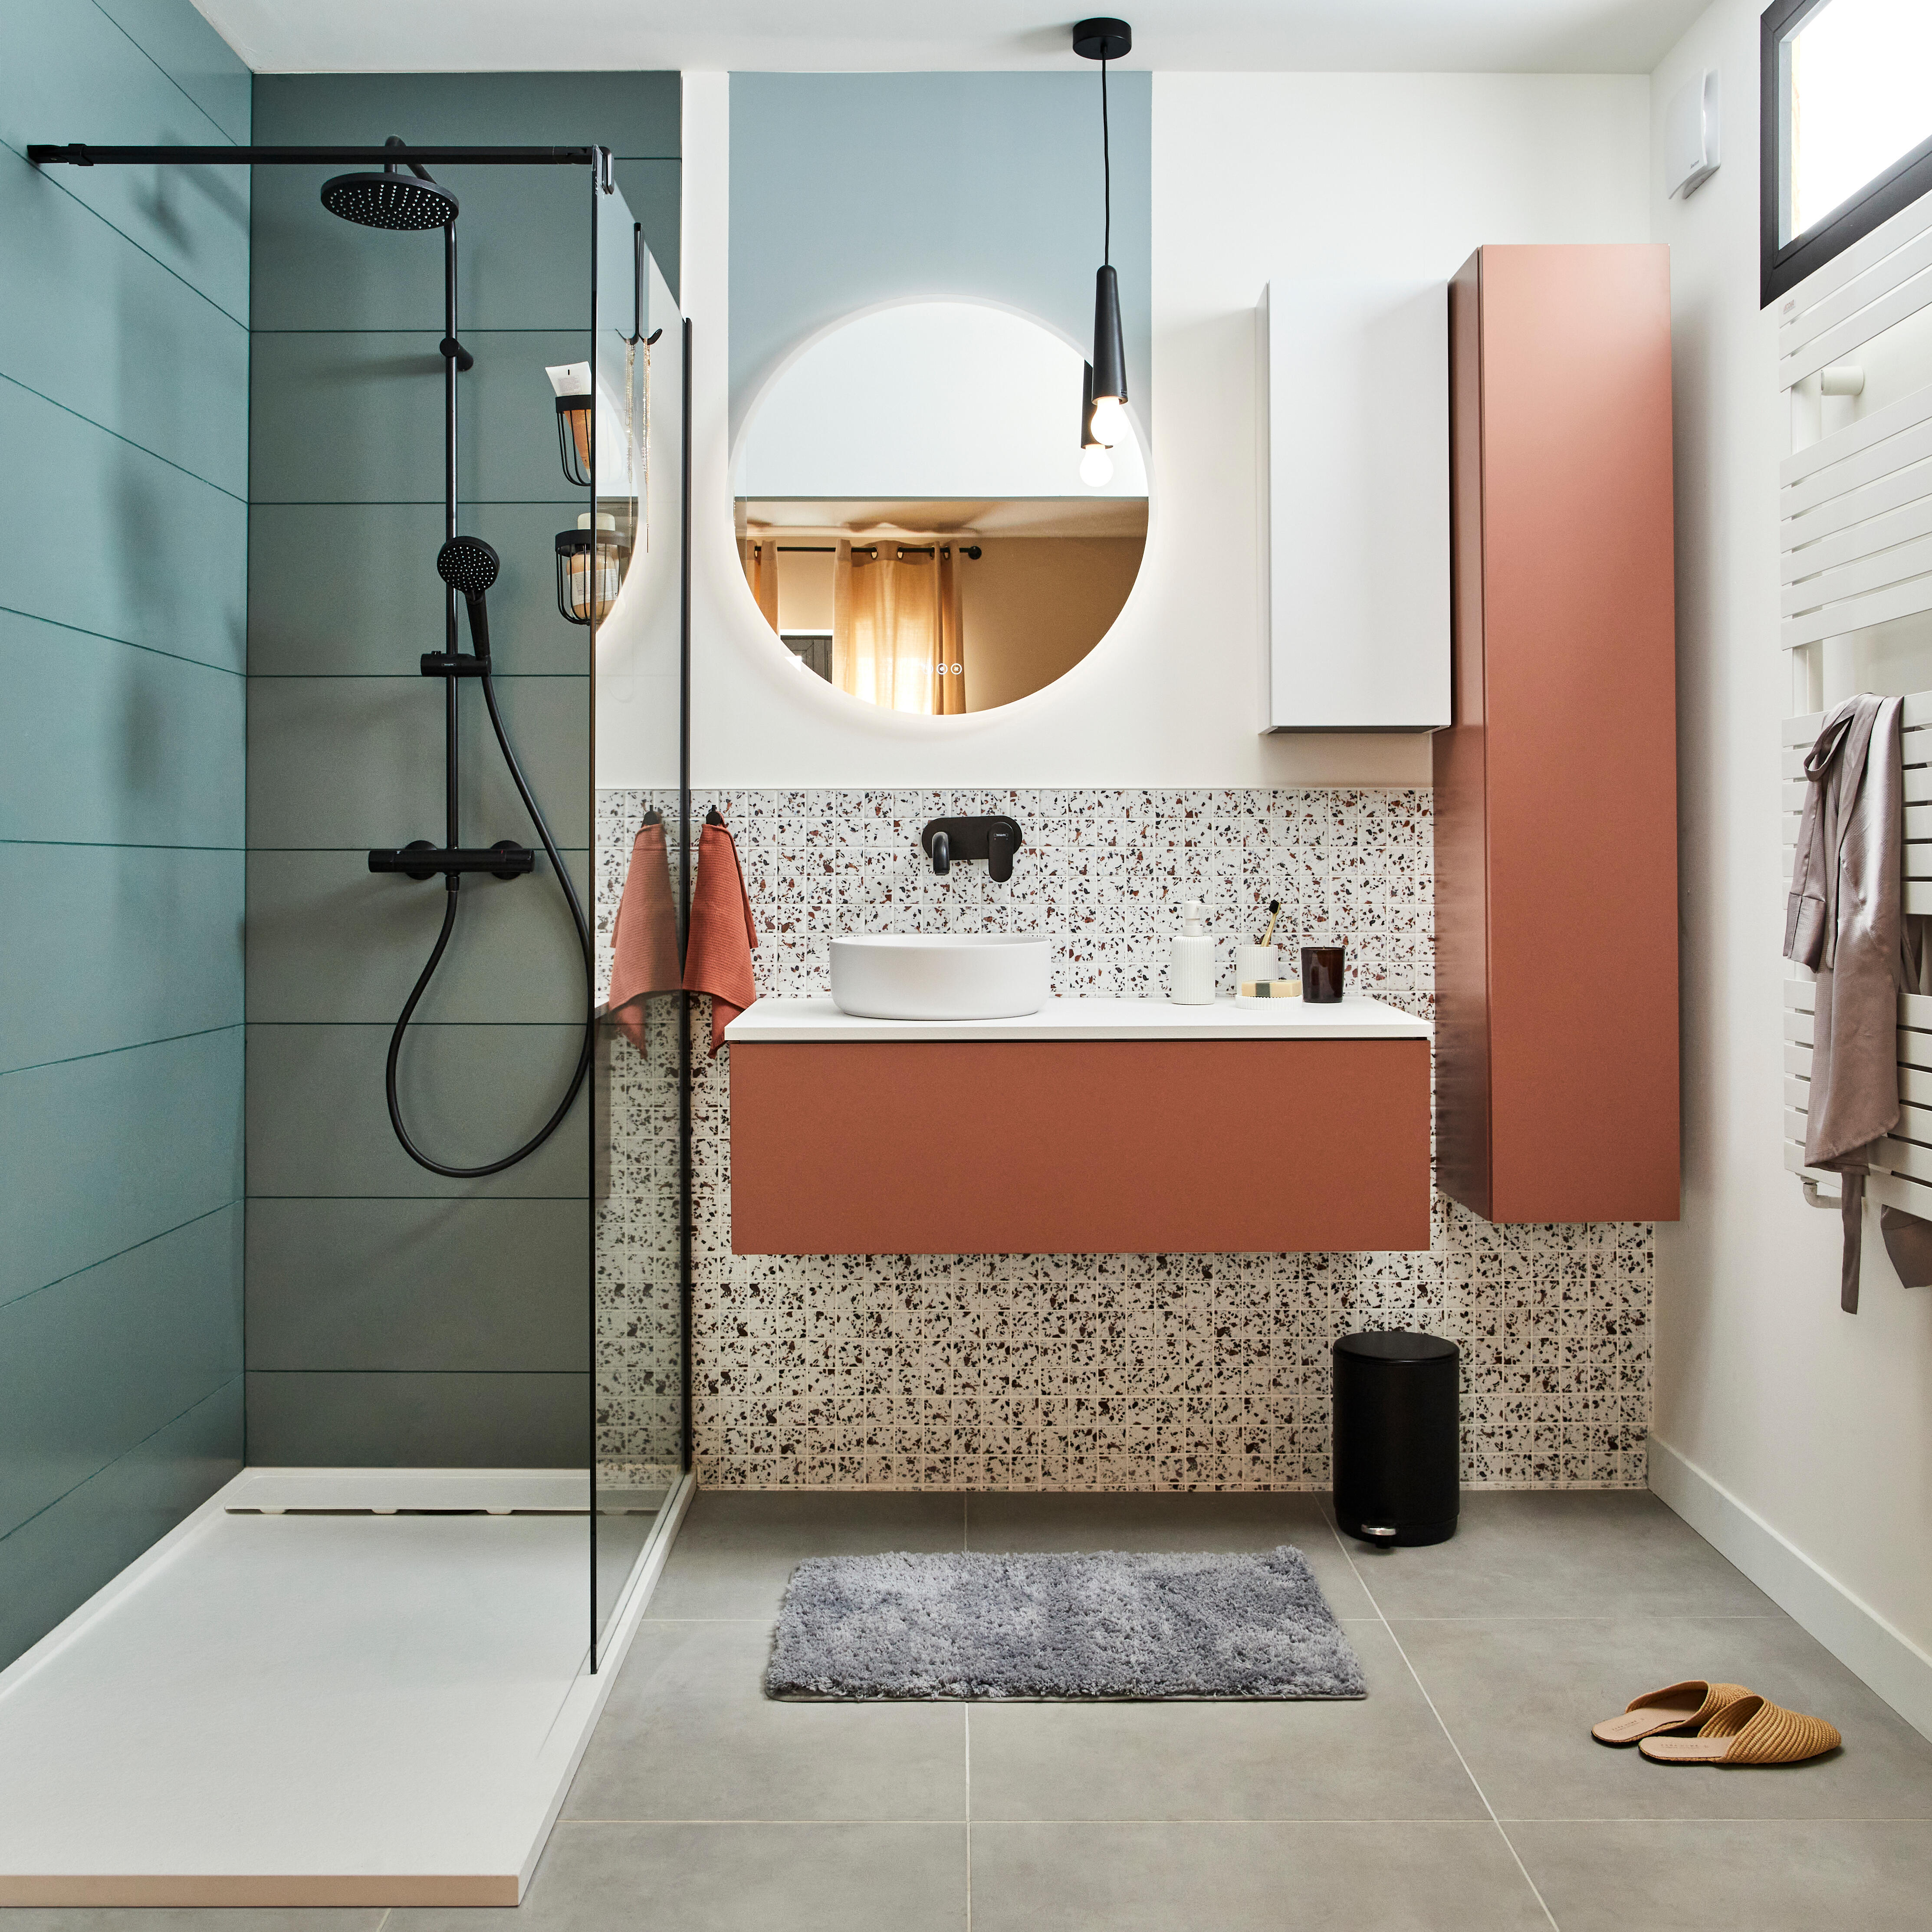 Salle de bain de 3 m² : les conseils pour bien l'aménager